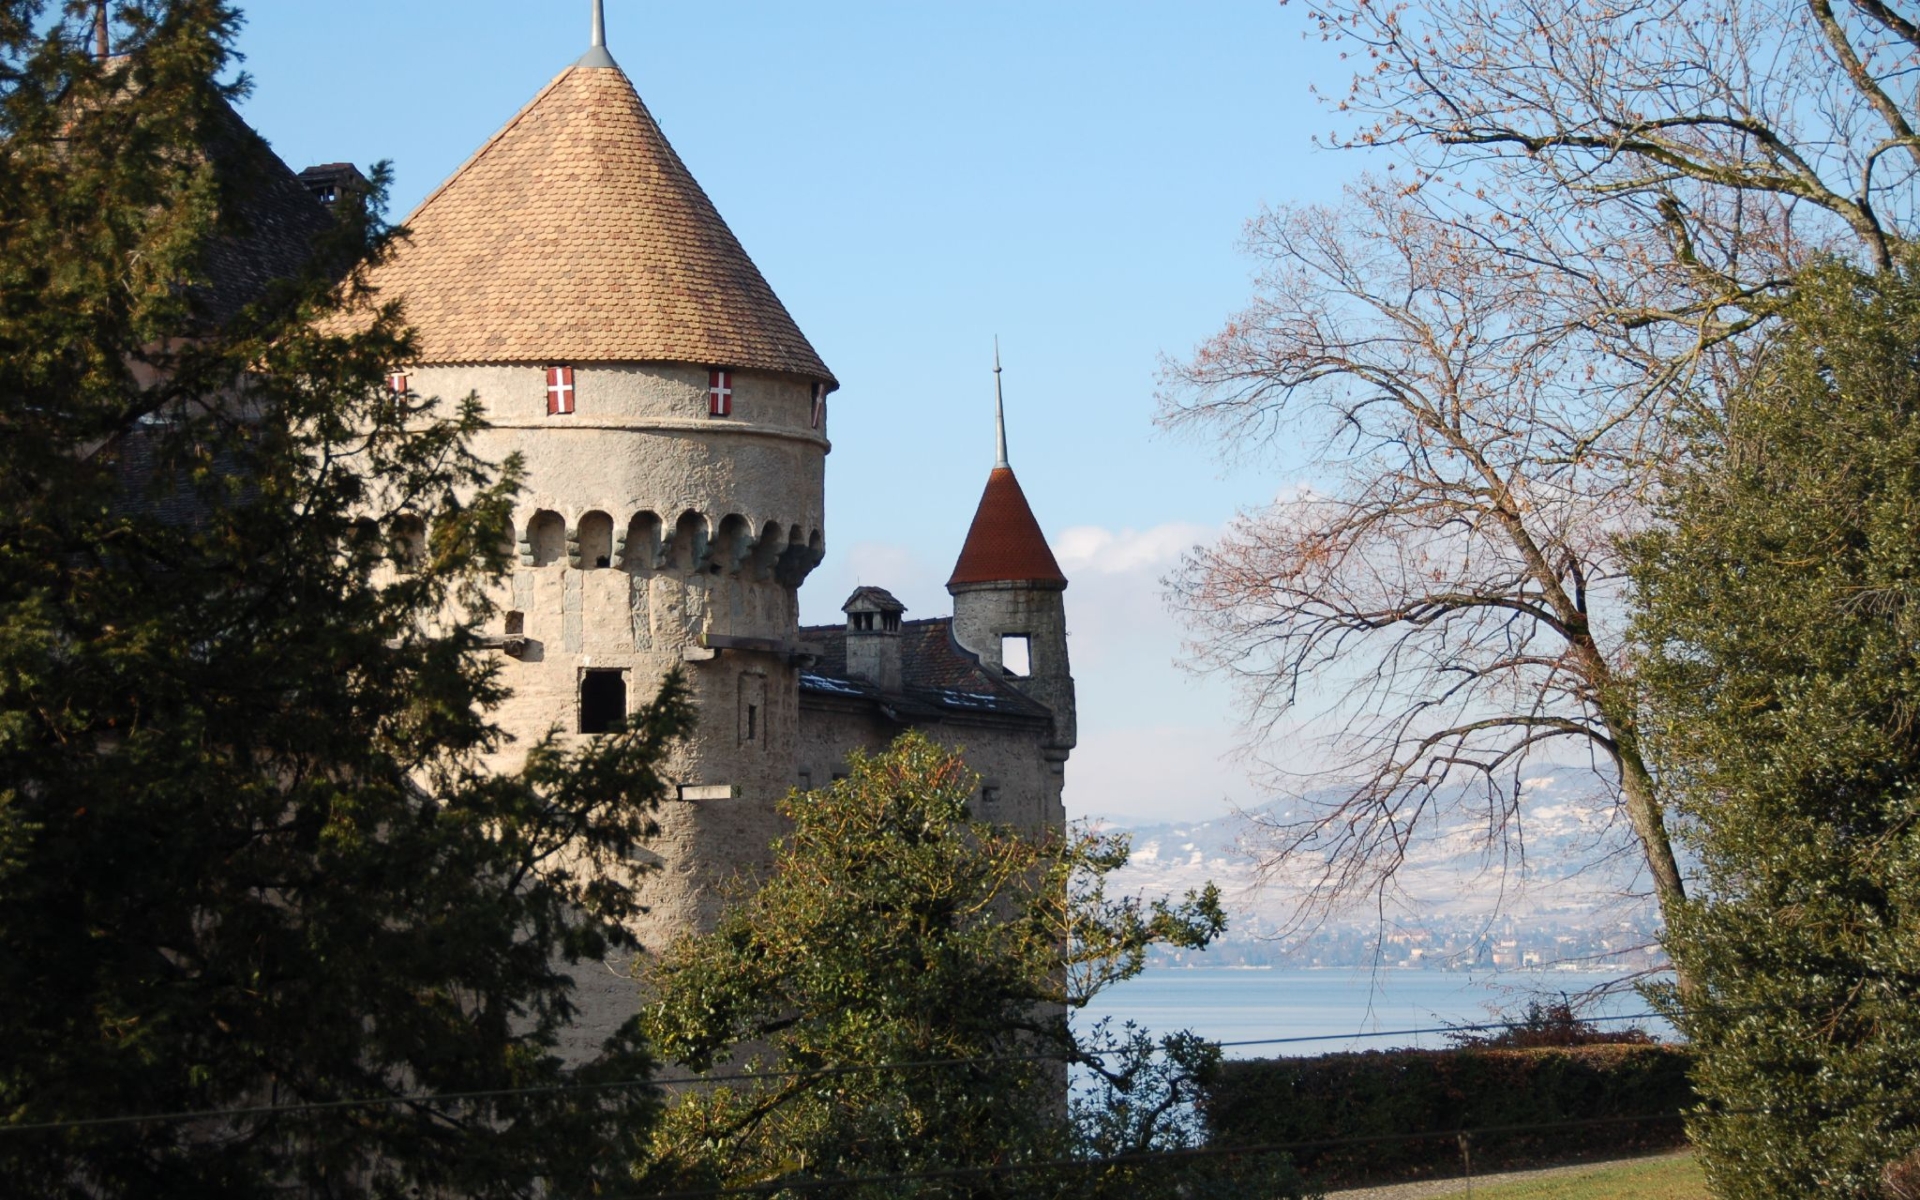 Free download wallpaper Castles, Switzerland, Man Made, Veytaux, Château De Chillon on your PC desktop